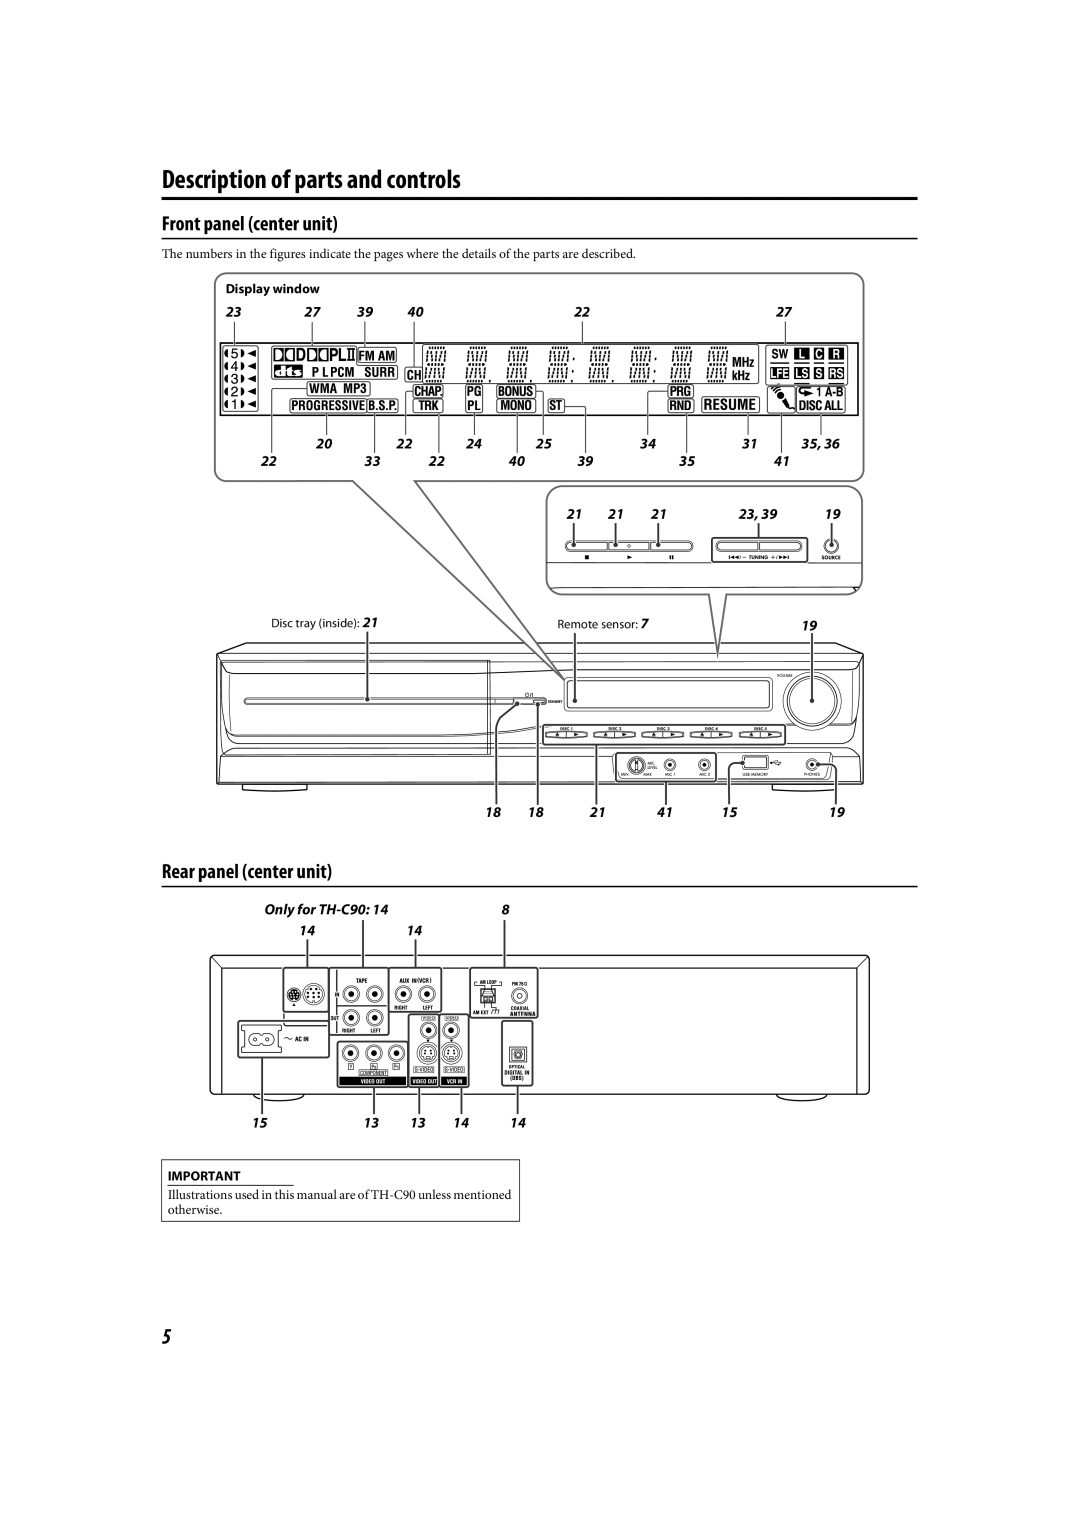 JVC LVT1504-005B manual Description of parts and controls, Front panel center unit, Rear panel center unit 